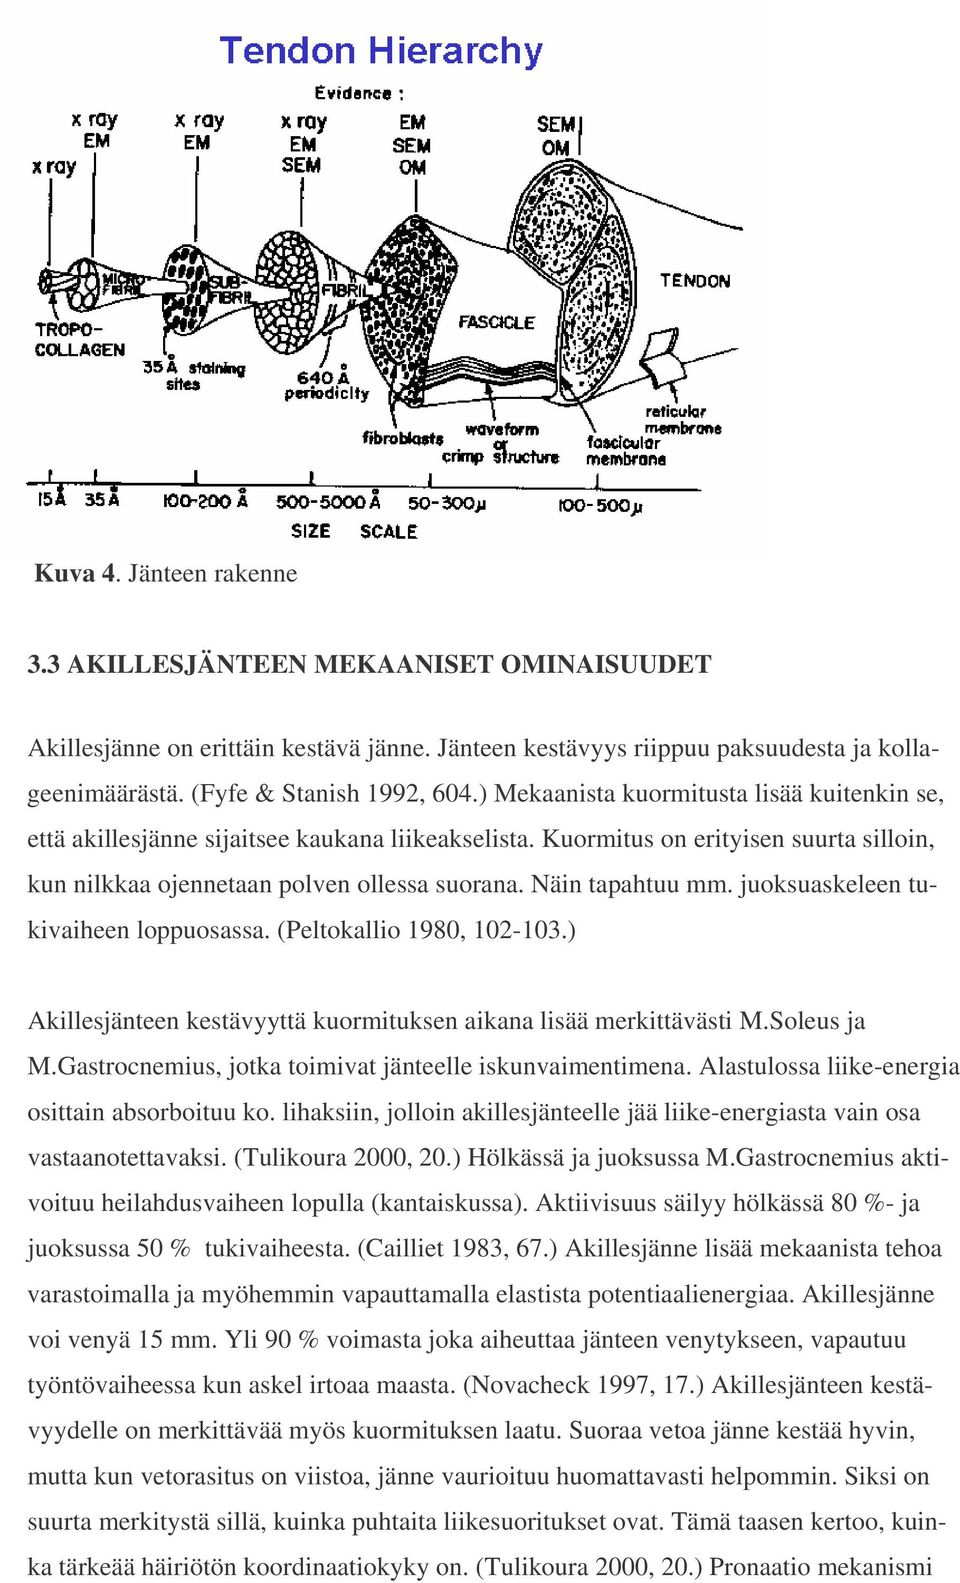 juoksuaskeleen tukivaiheen loppuosassa. (Peltokallio 1980, 102-103.) Akillesjänteen kestävyyttä kuormituksen aikana lisää merkittävästi M.Soleus ja M.